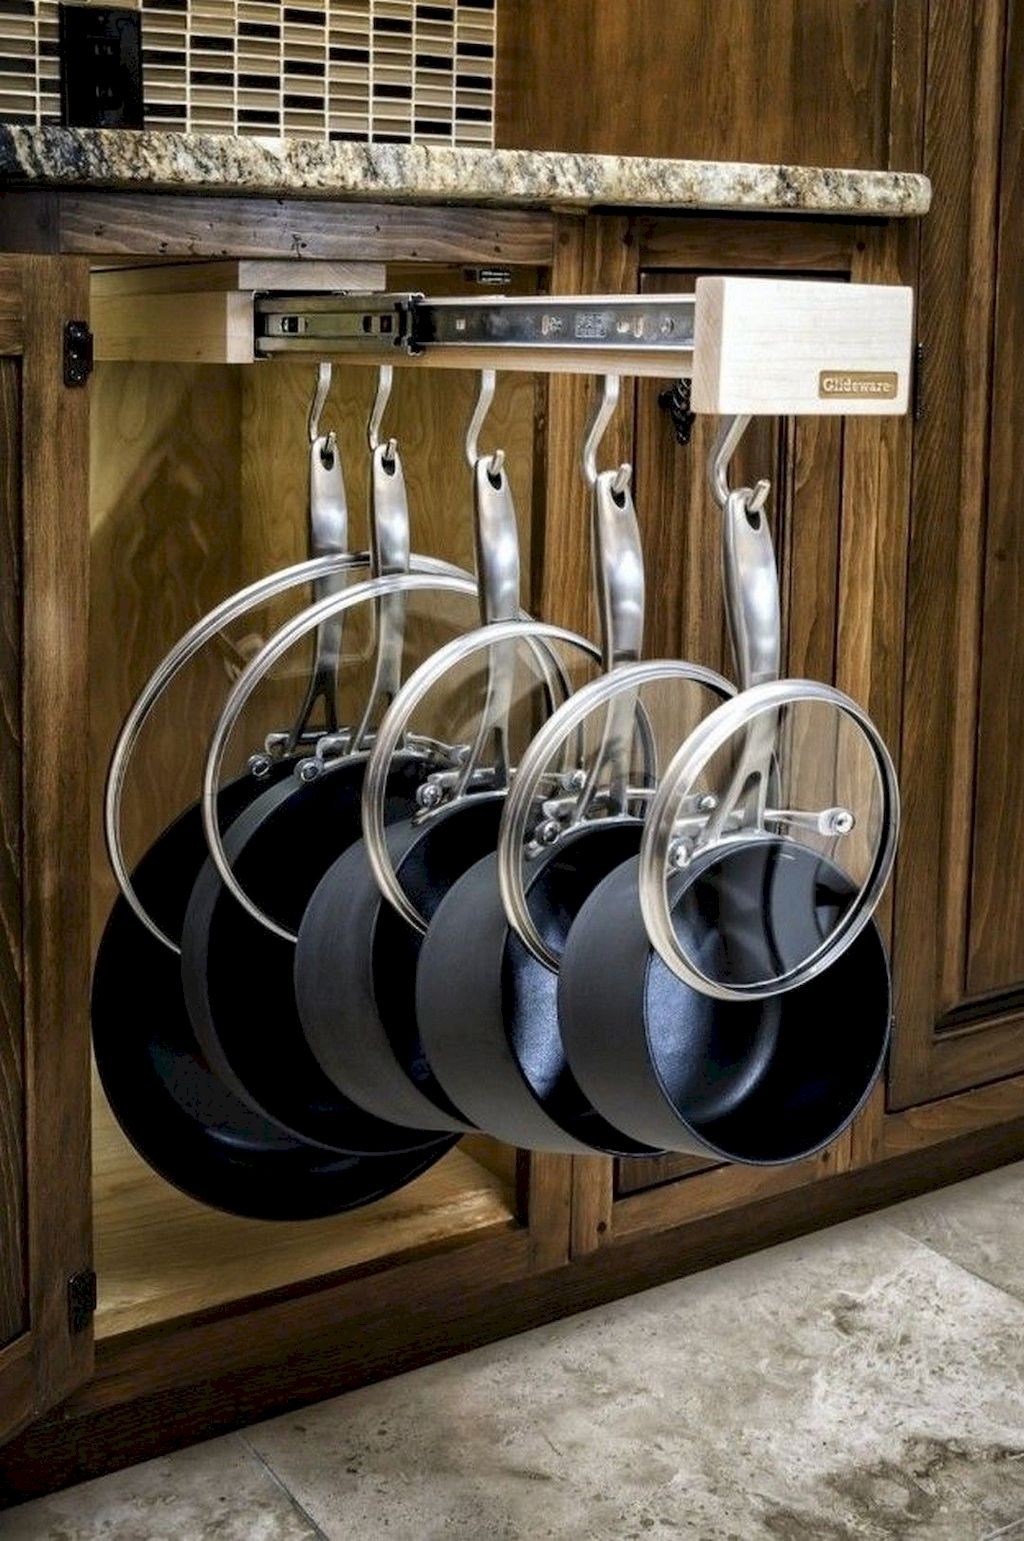 Cookware hangers